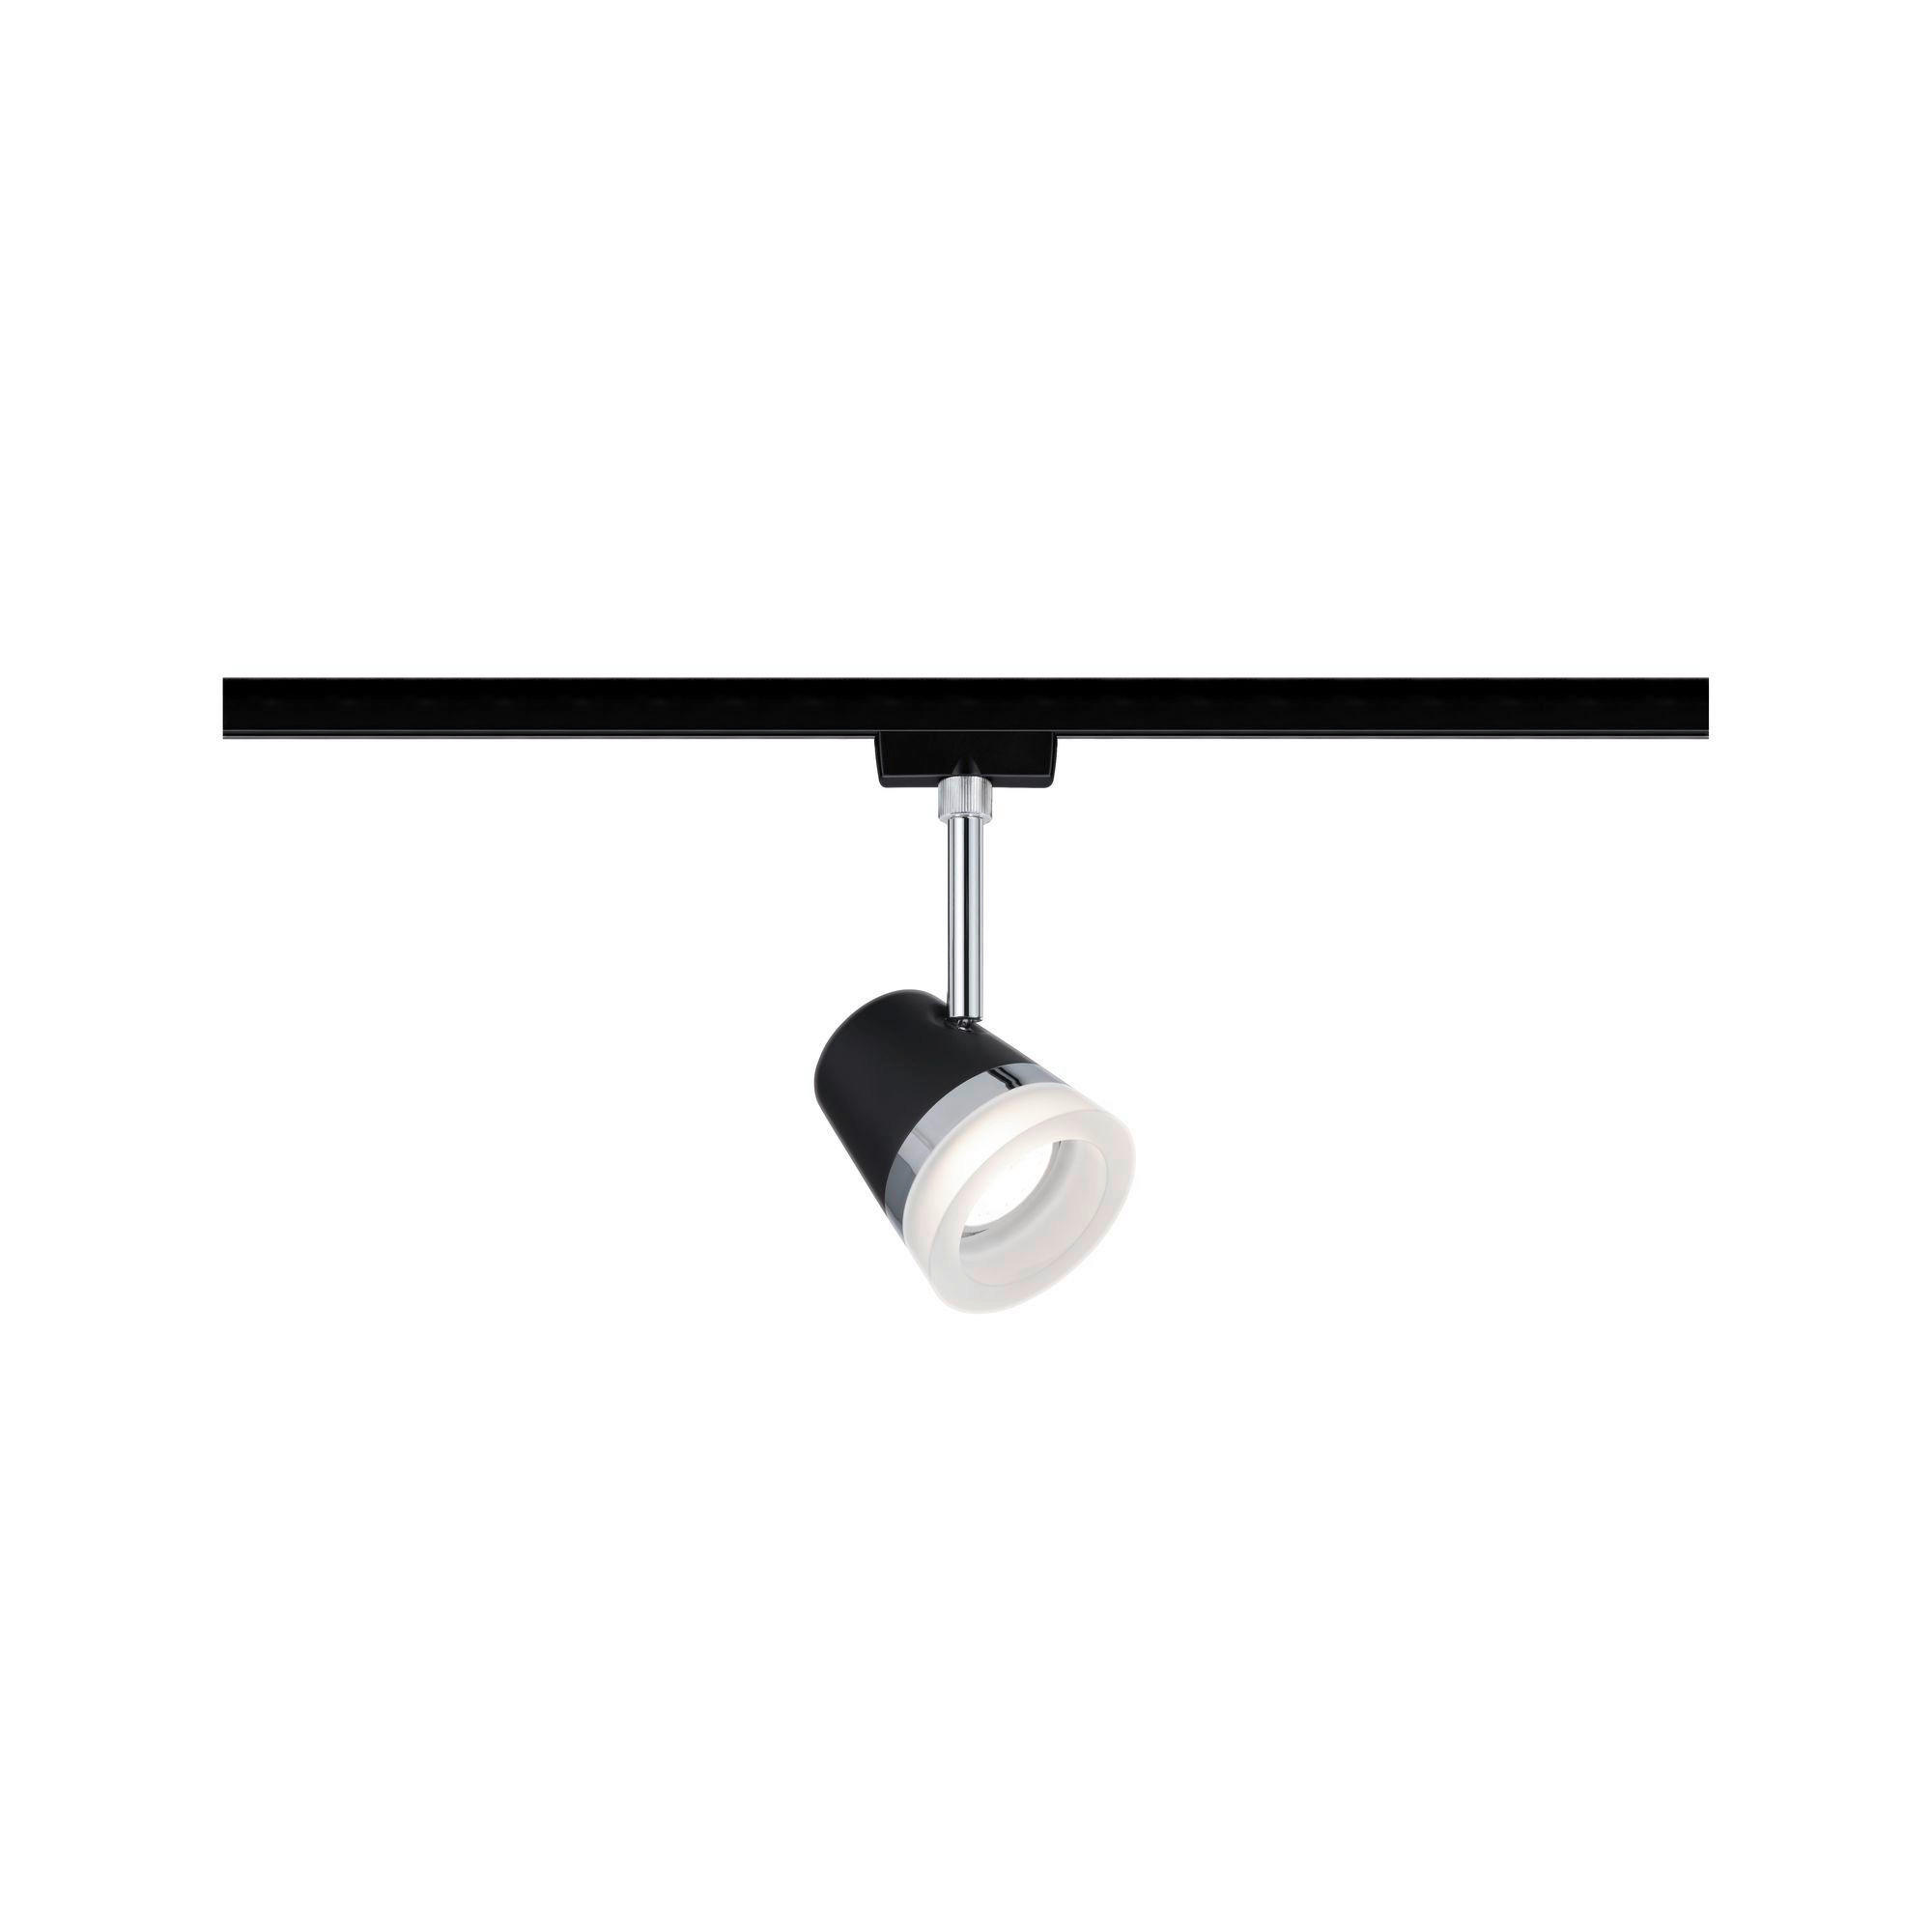 LED-DECKENLEUCHTE     - Chromfarben/Schwarz, Design, Kunststoff/Metall (18,0cm) - Paulmann